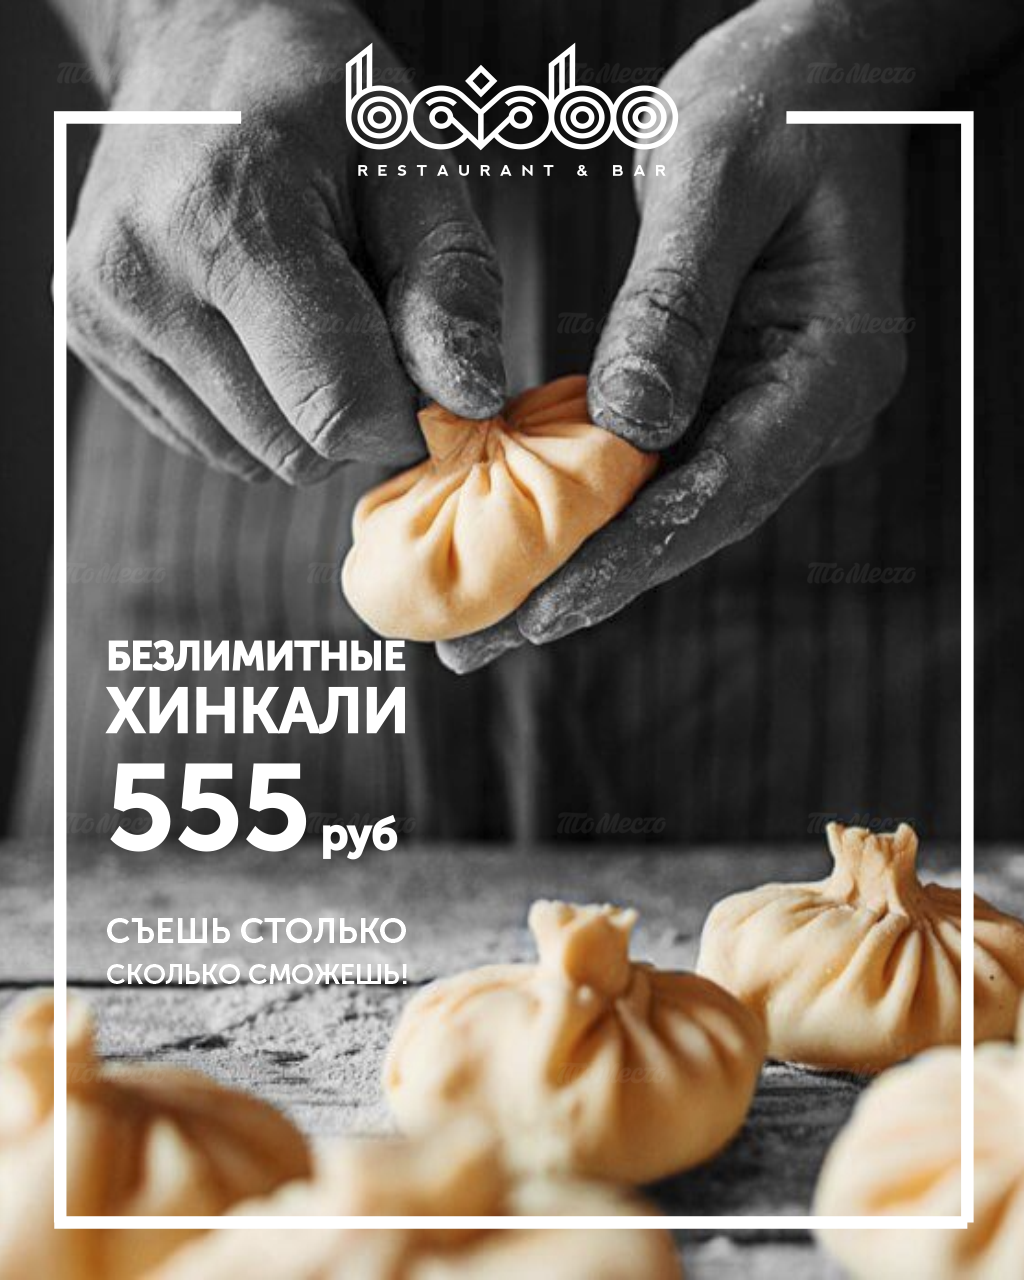 Безлимитные хинкали всего за 555 рублей!